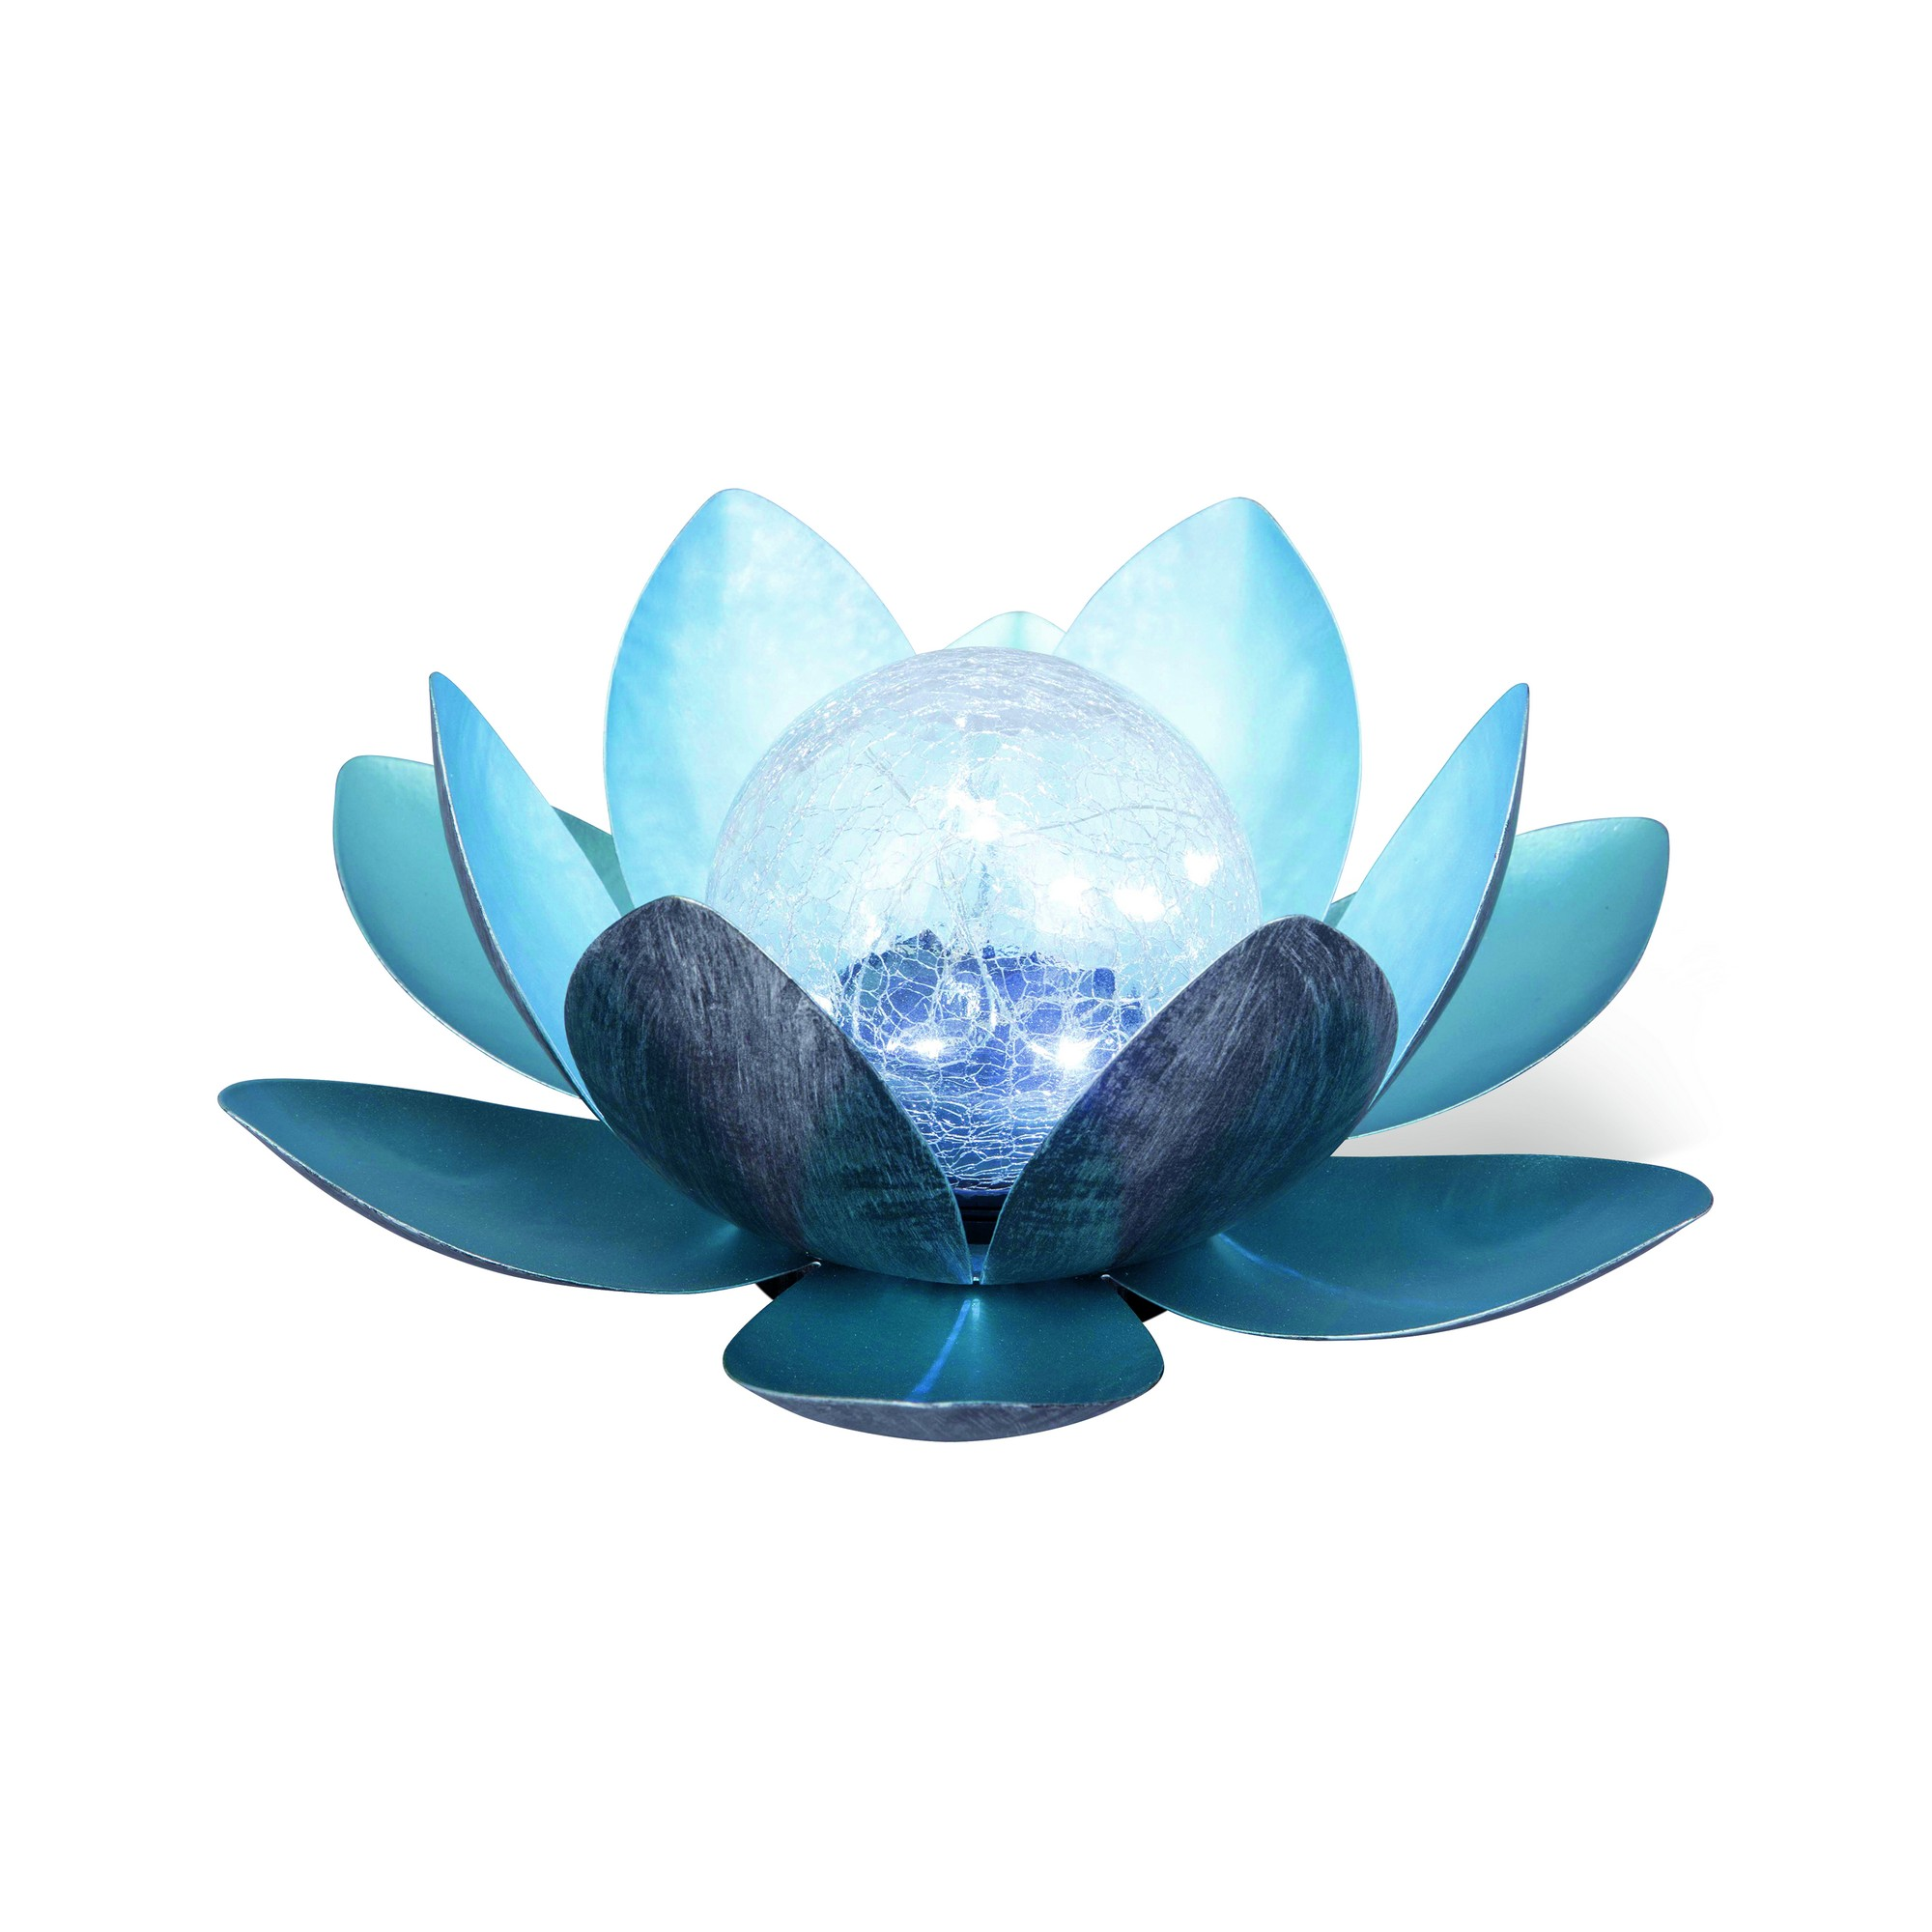 Solar-Dekoleuchte Lotus blau 27 x 11 cm + product picture